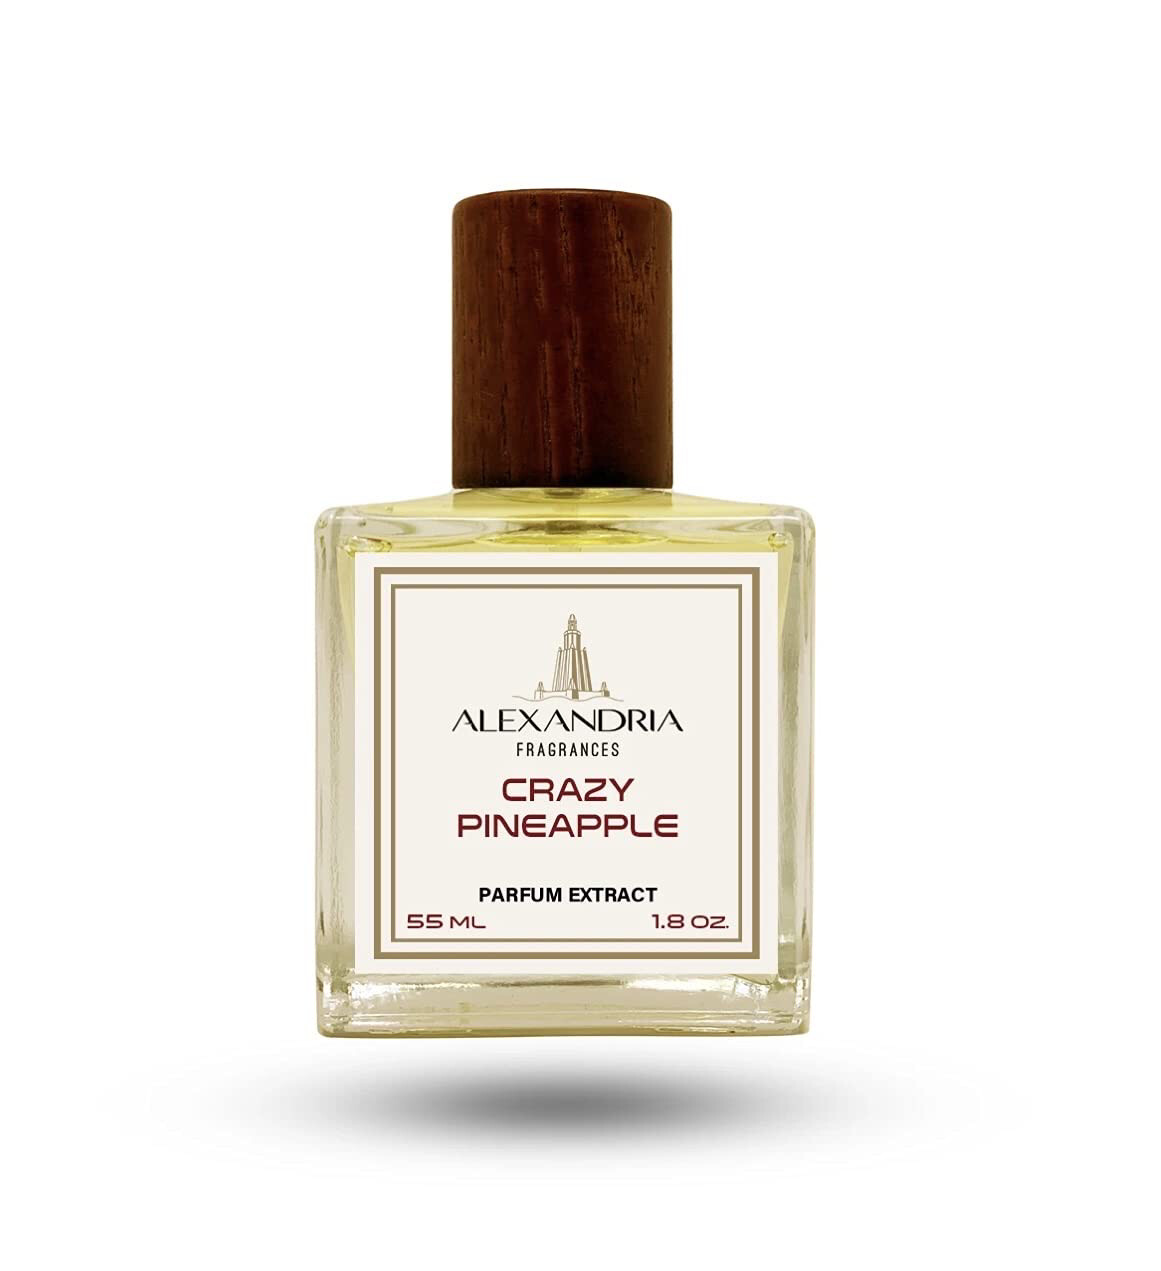 CRAZY PINEAPPLE CREACIÓN ORIGINAL 55 ML extracto perfume ALEXANDRIA FRAGRANCES 